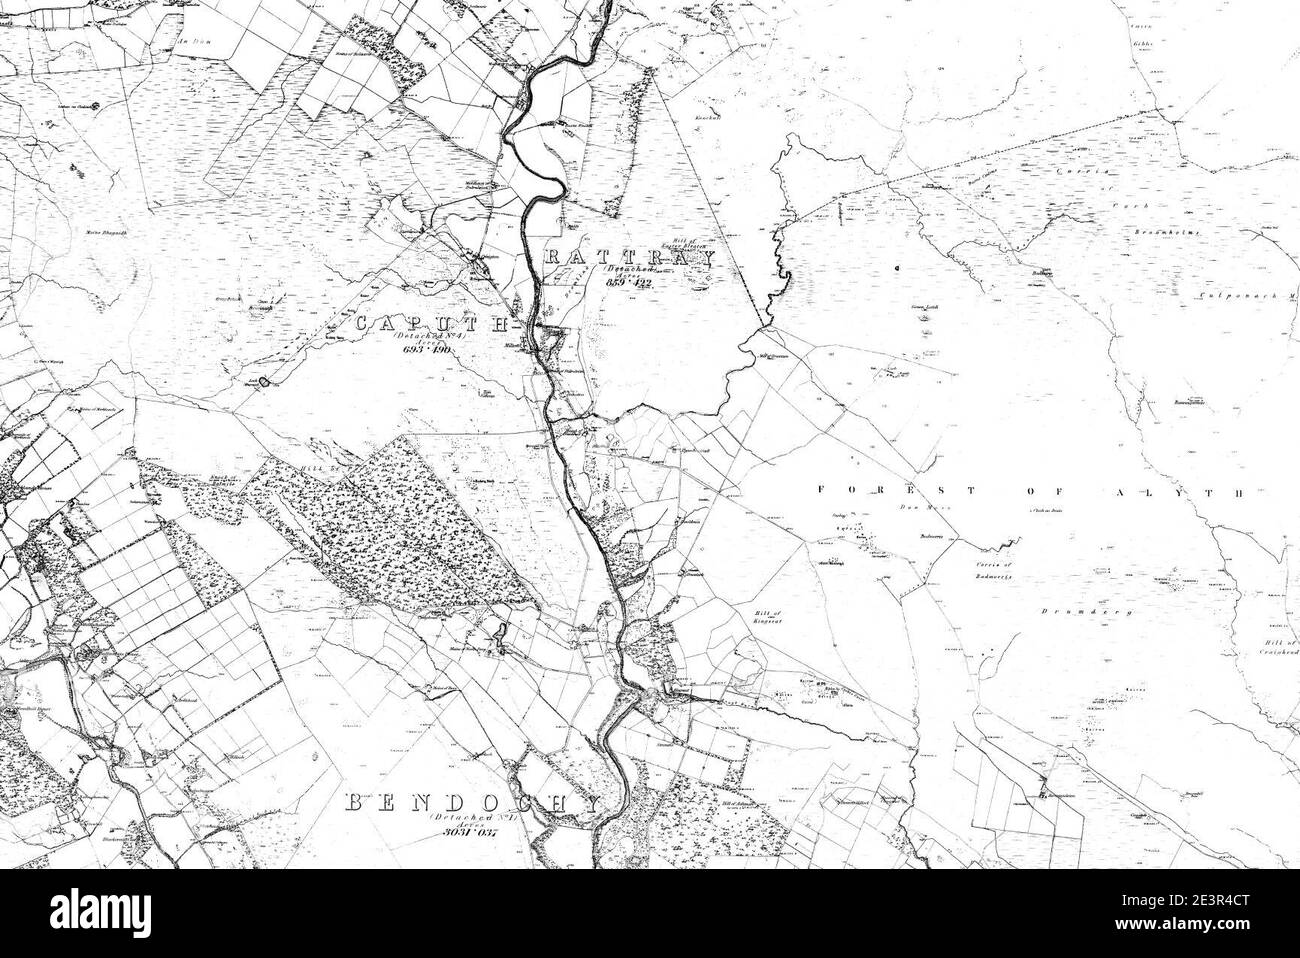 Karte von Forfarshire Blatt 029, Ordnance Survey, 1865-1869. Stockfoto